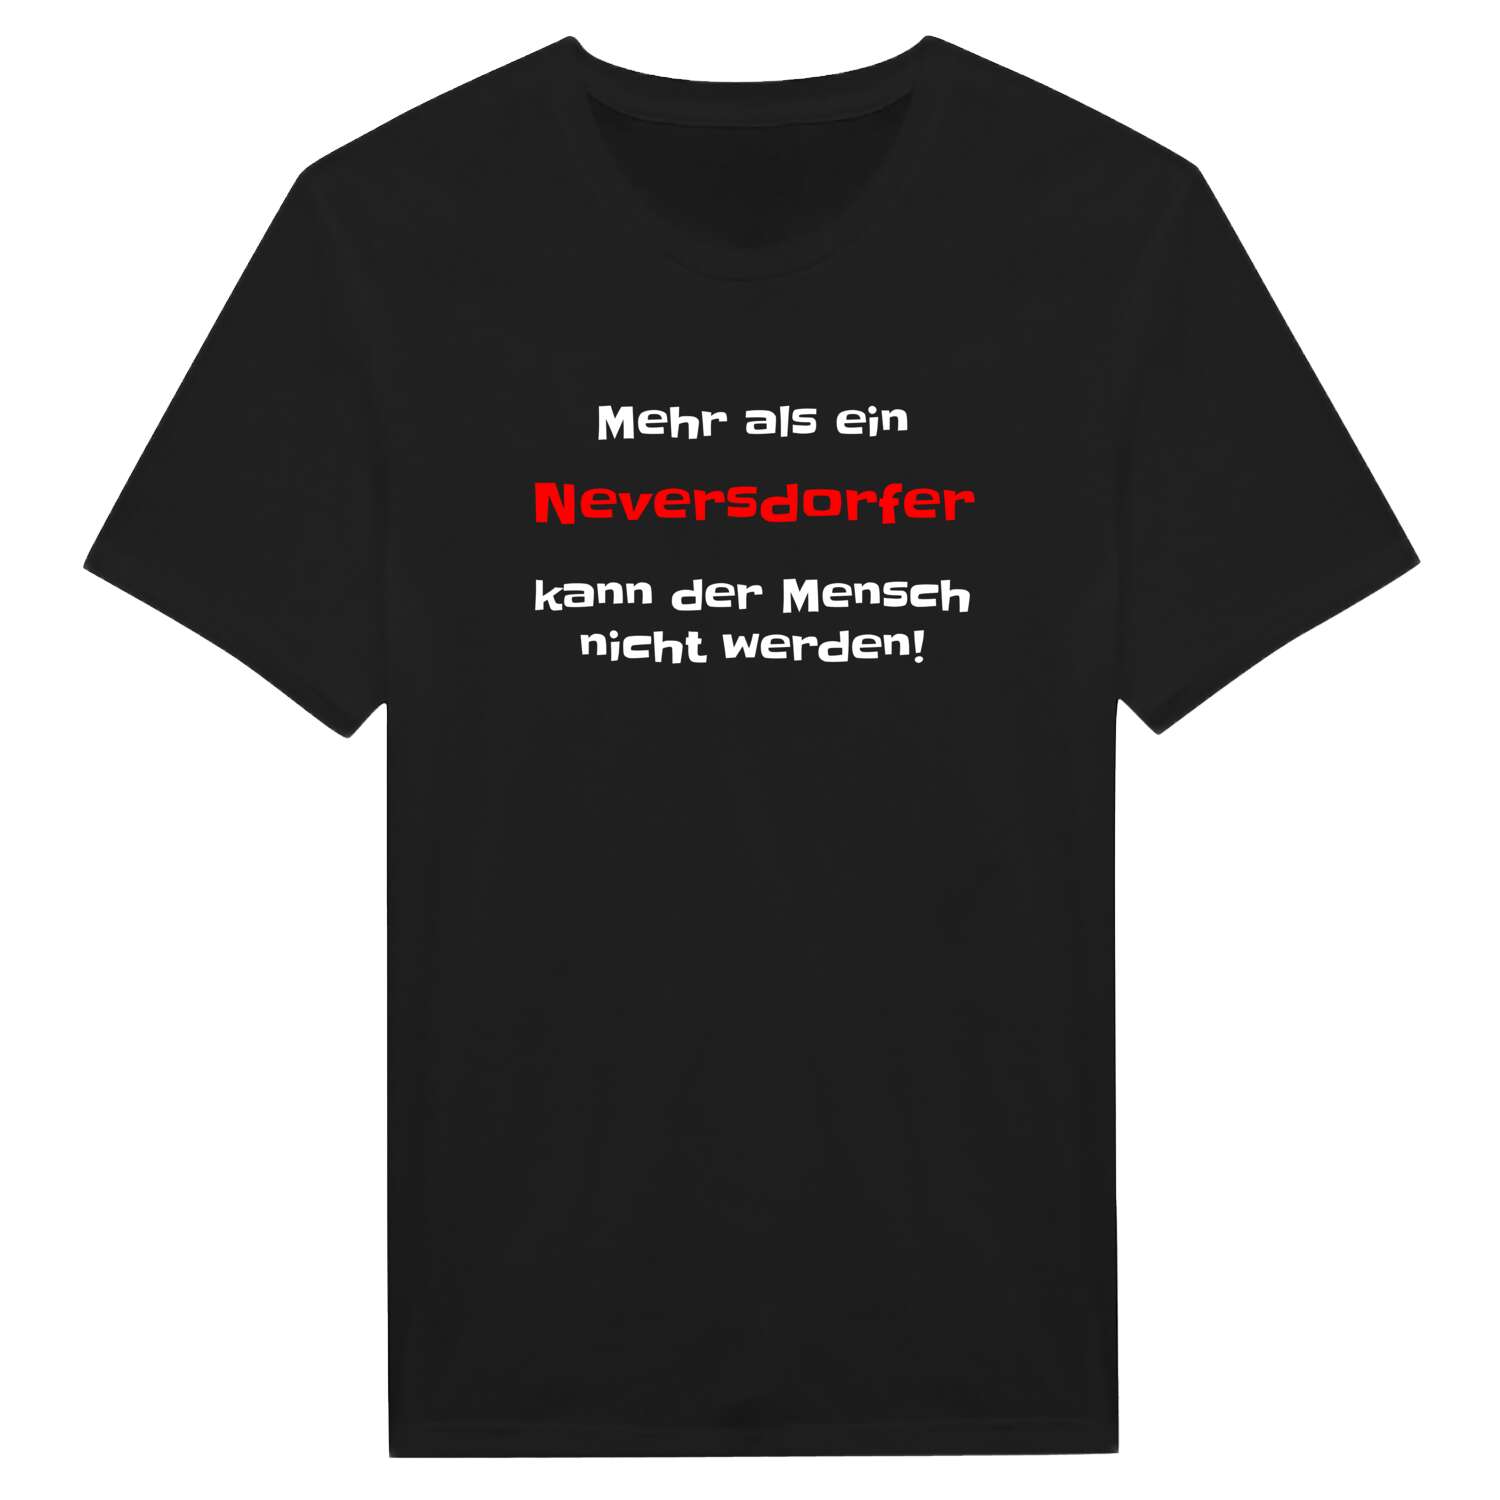 Neversdorf T-Shirt »Mehr als ein«